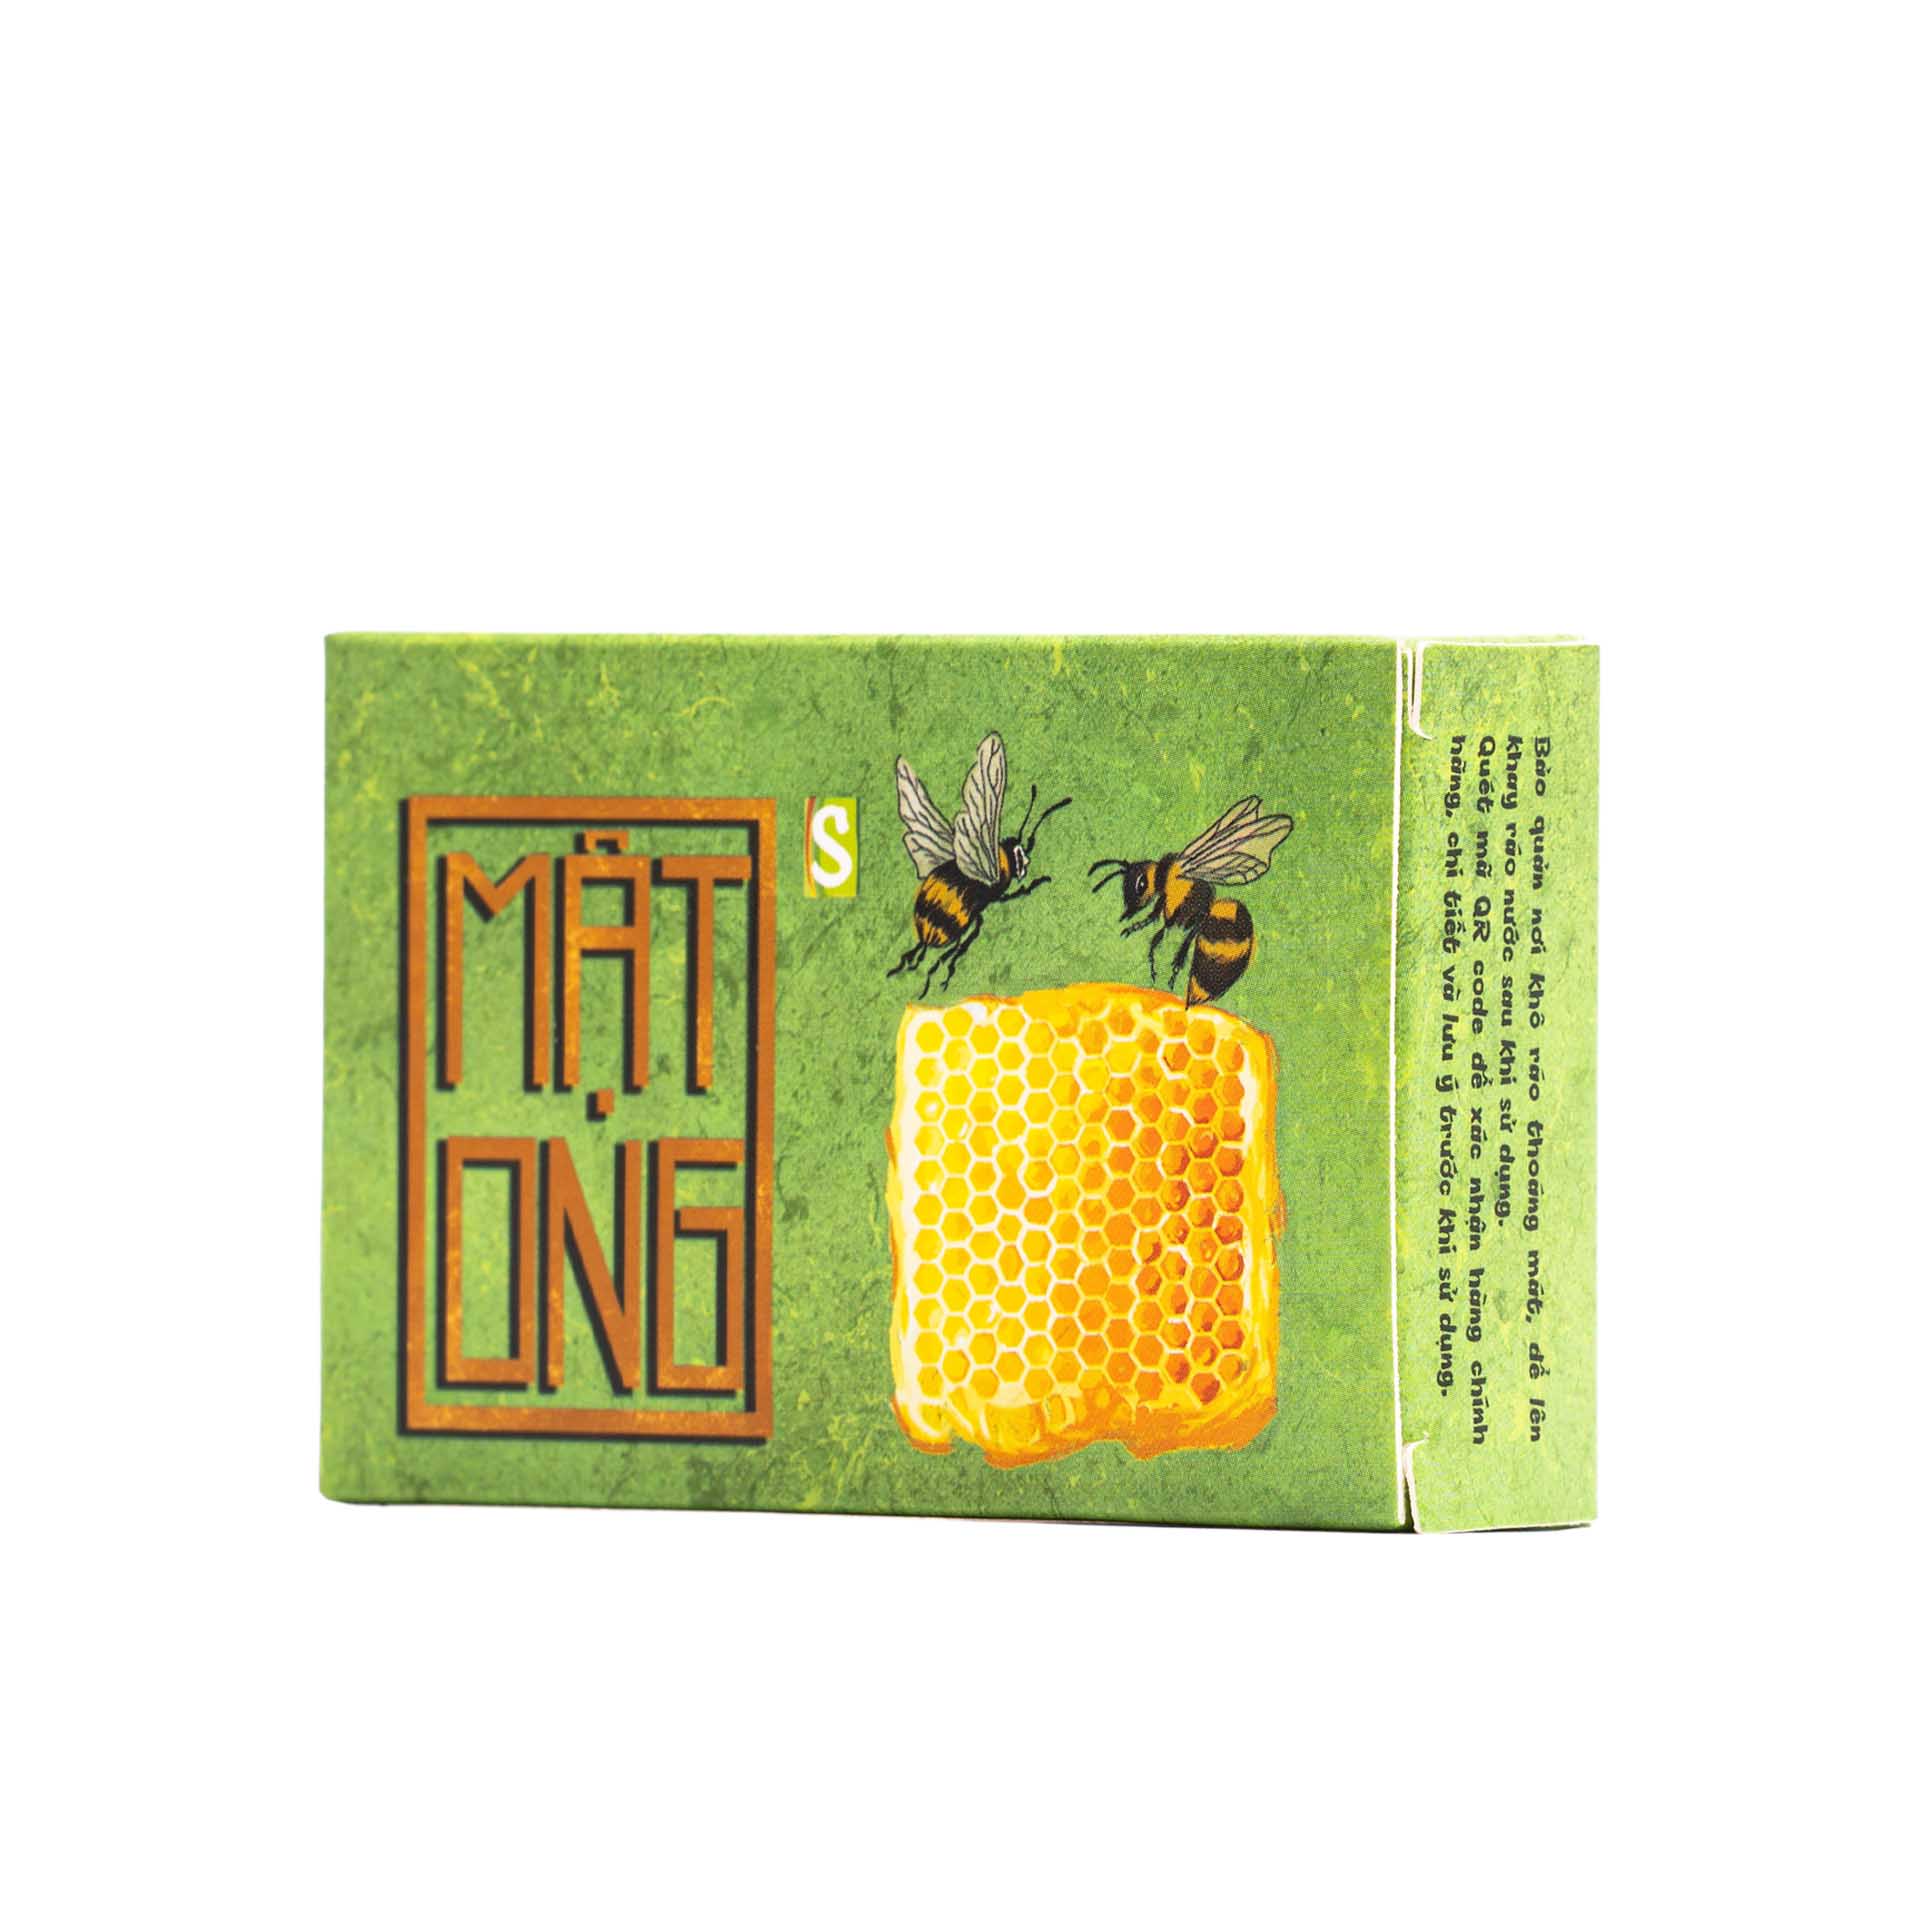 Xà bông Sinh Dược Mật ong mẫu bao bì vẽ mộc, bánh 100gr, hương mật ong nhẹ nhàng, làm sạch da, dưỡng da dịu nhẹ, có thể dùng cho da mặt